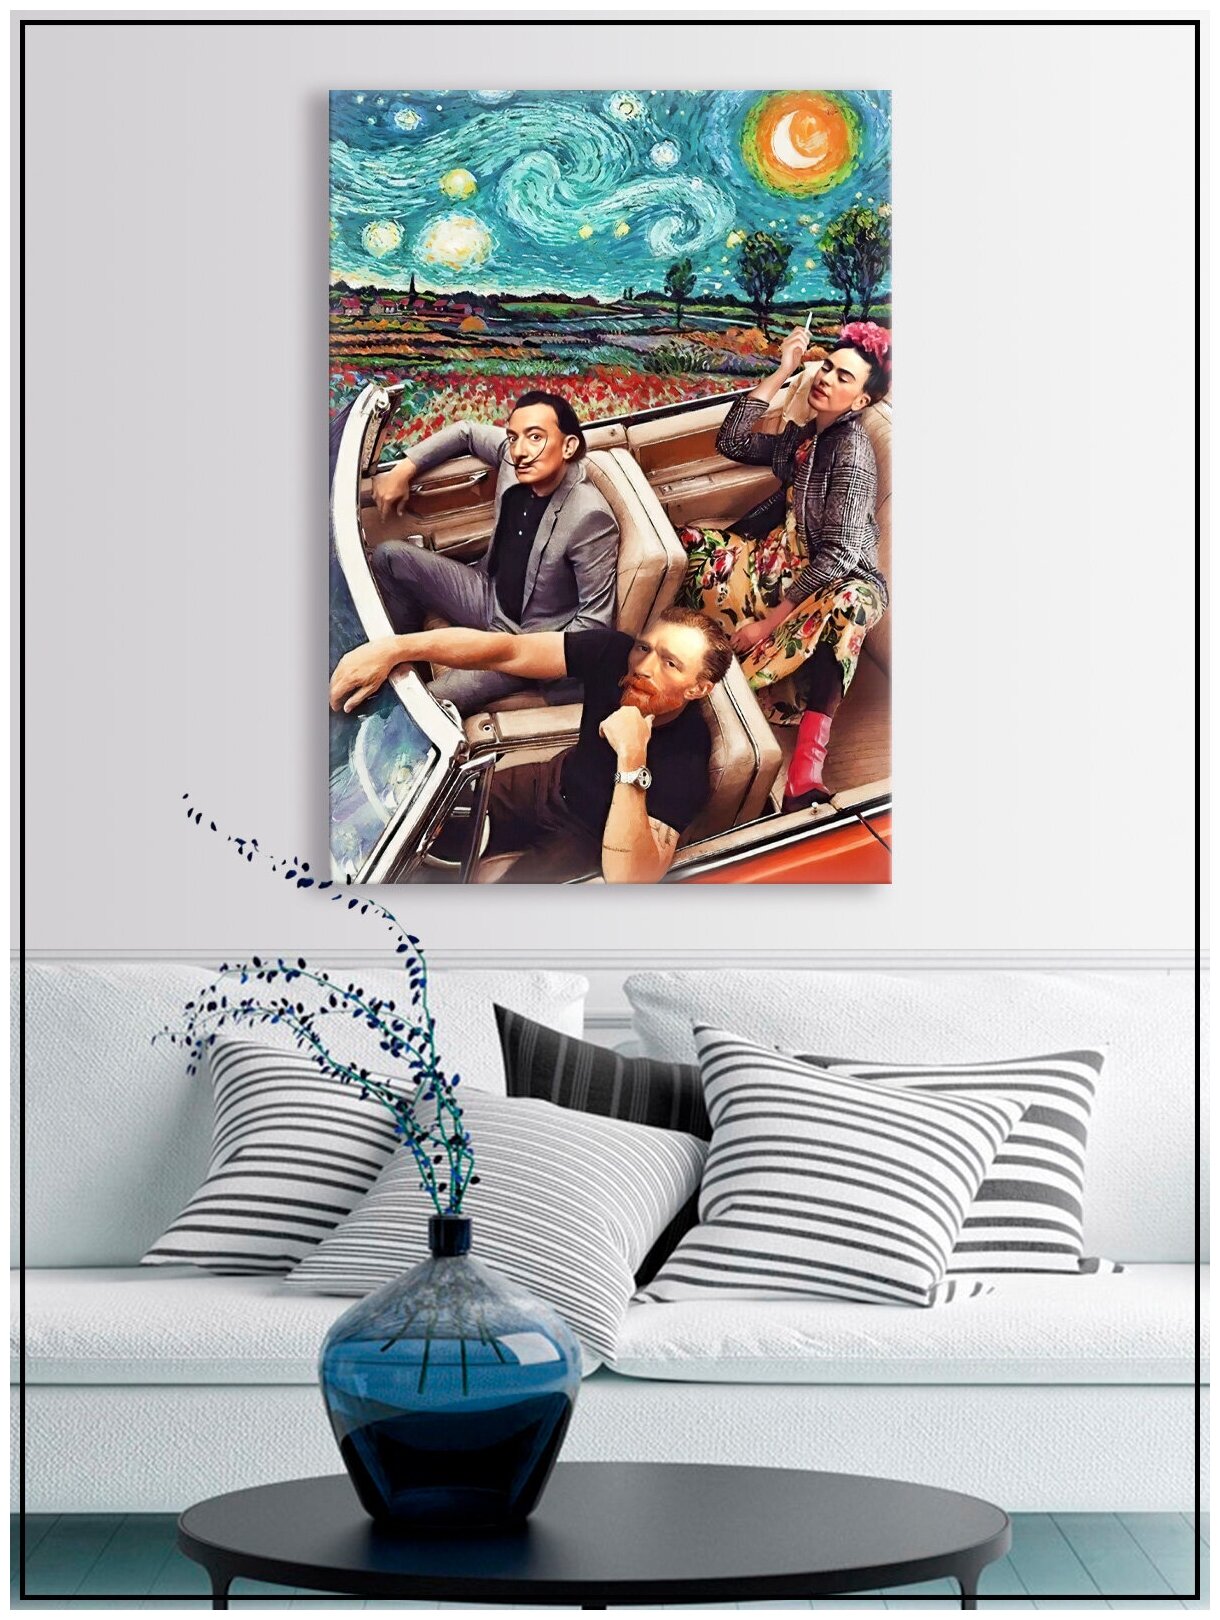 Картина для интерьера на натуральном хлопковом холсте "Ван Гог, Дали и Фрида в кабриолете", 30*40см, холст на подрамнике, картина в подарок для дома